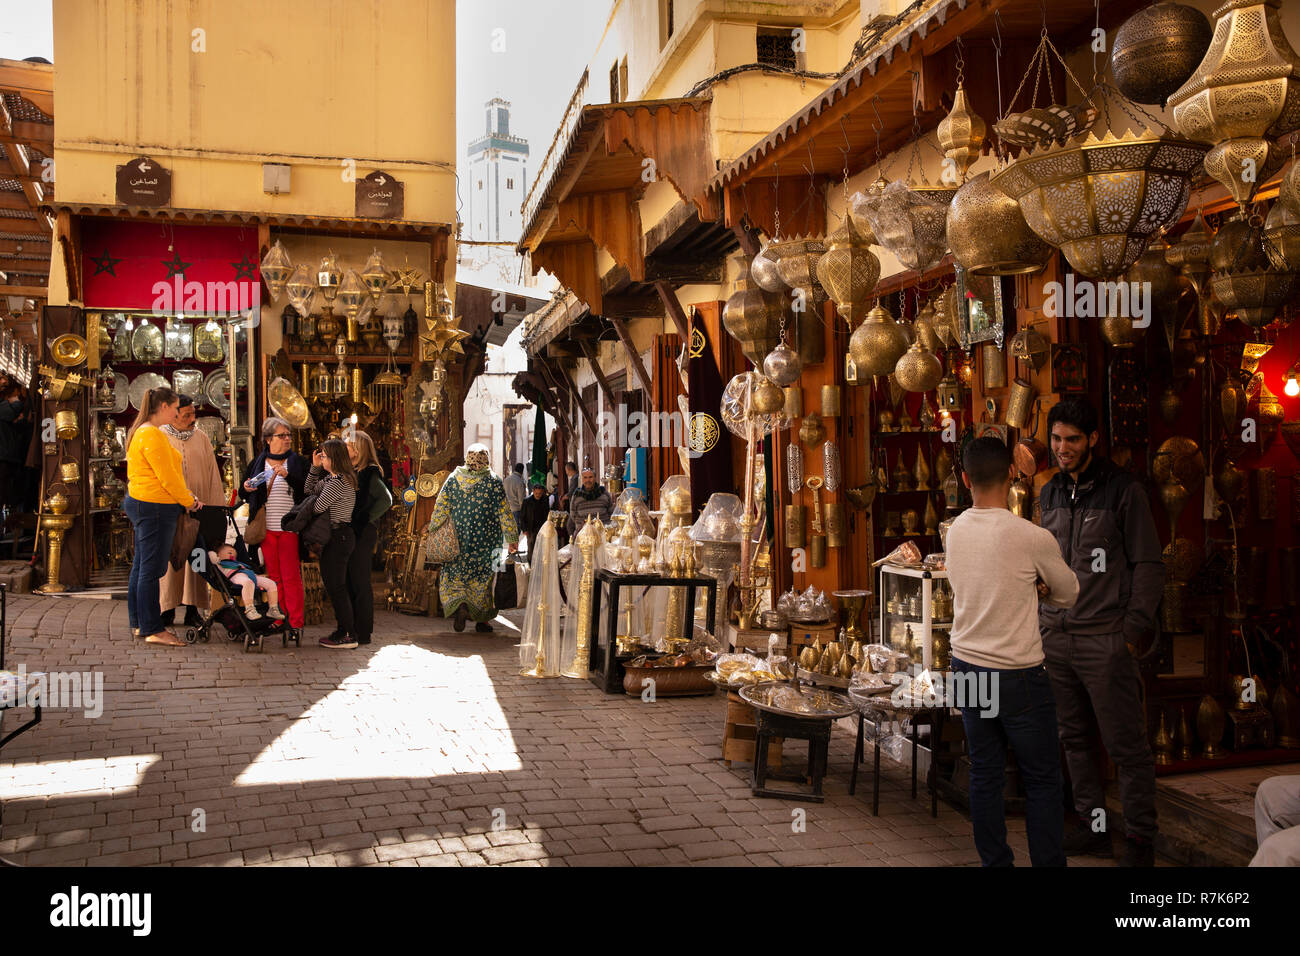 Marokko, Fes, Fes el Bali, Medina, Place Seffarine, metallarbeiten Geschäfte anzeigen Messinggeschirr zum Verkauf Stockfoto